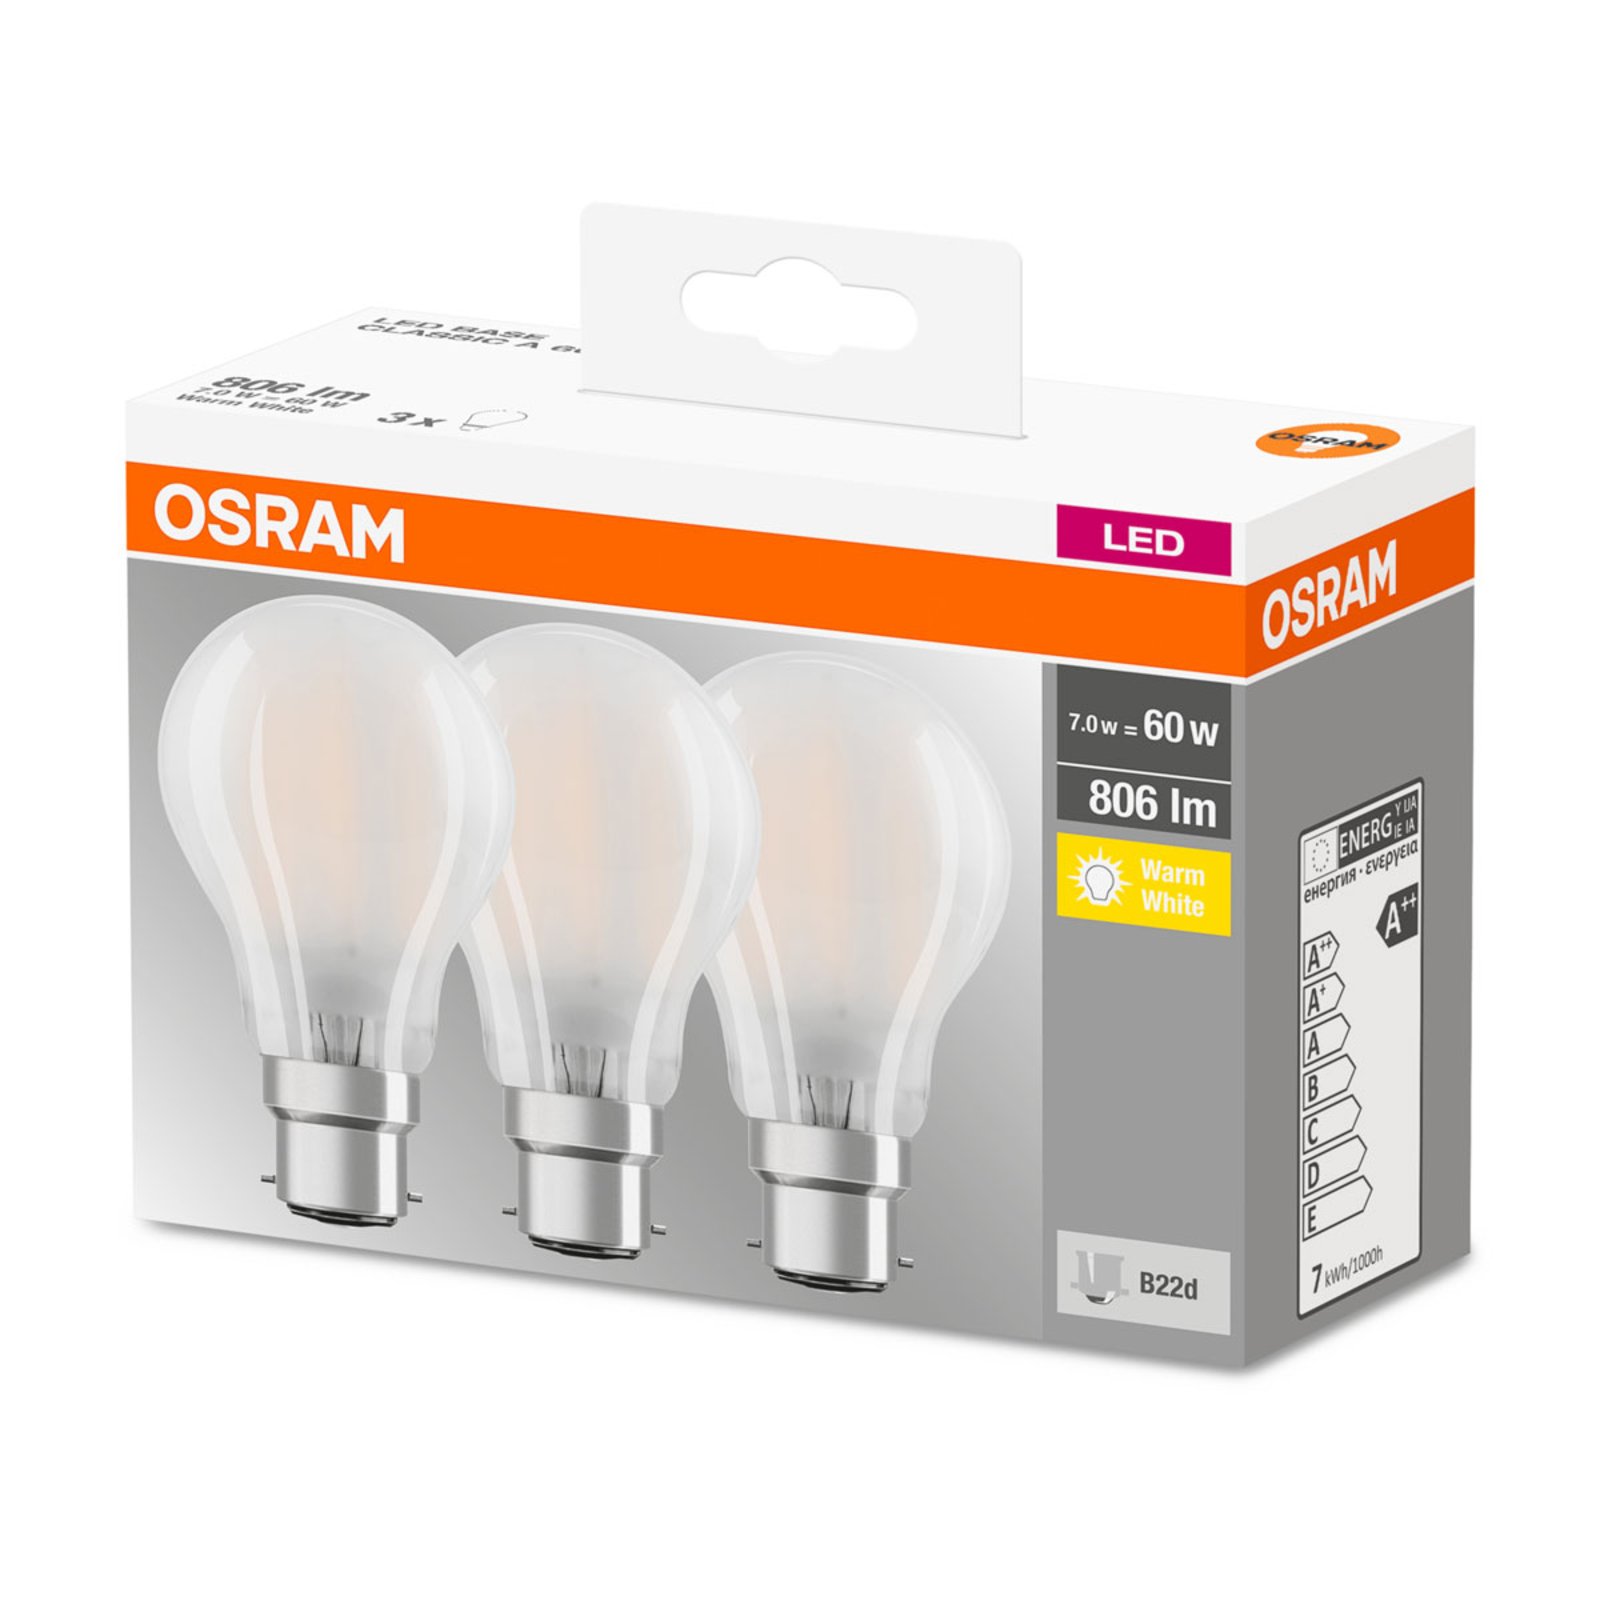 OSRAM ampoule LED B22d Classic 827 6,5W par 3 mat